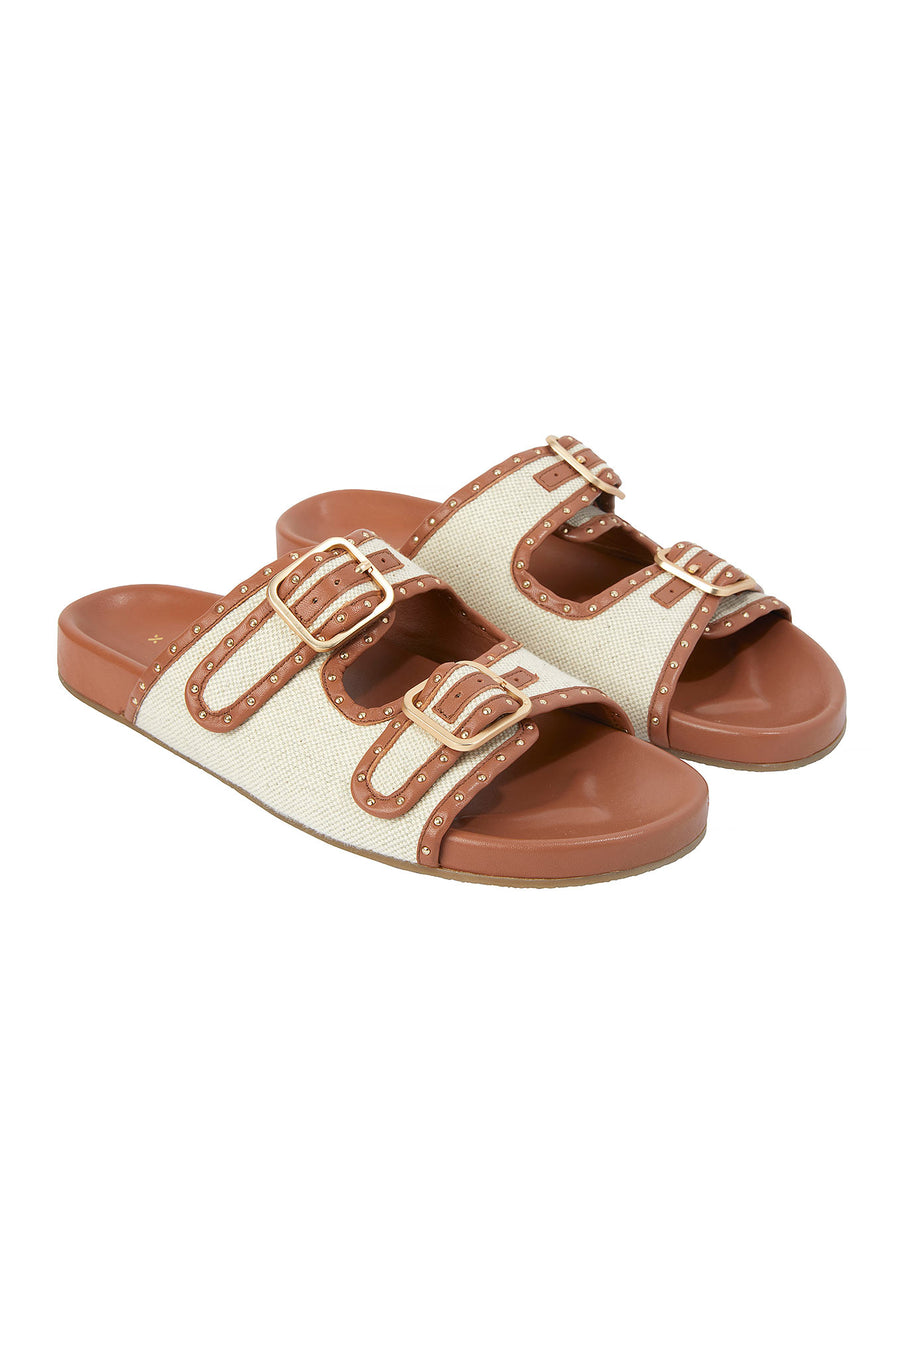 Lilou Buckle Sandal - Tan/Cream